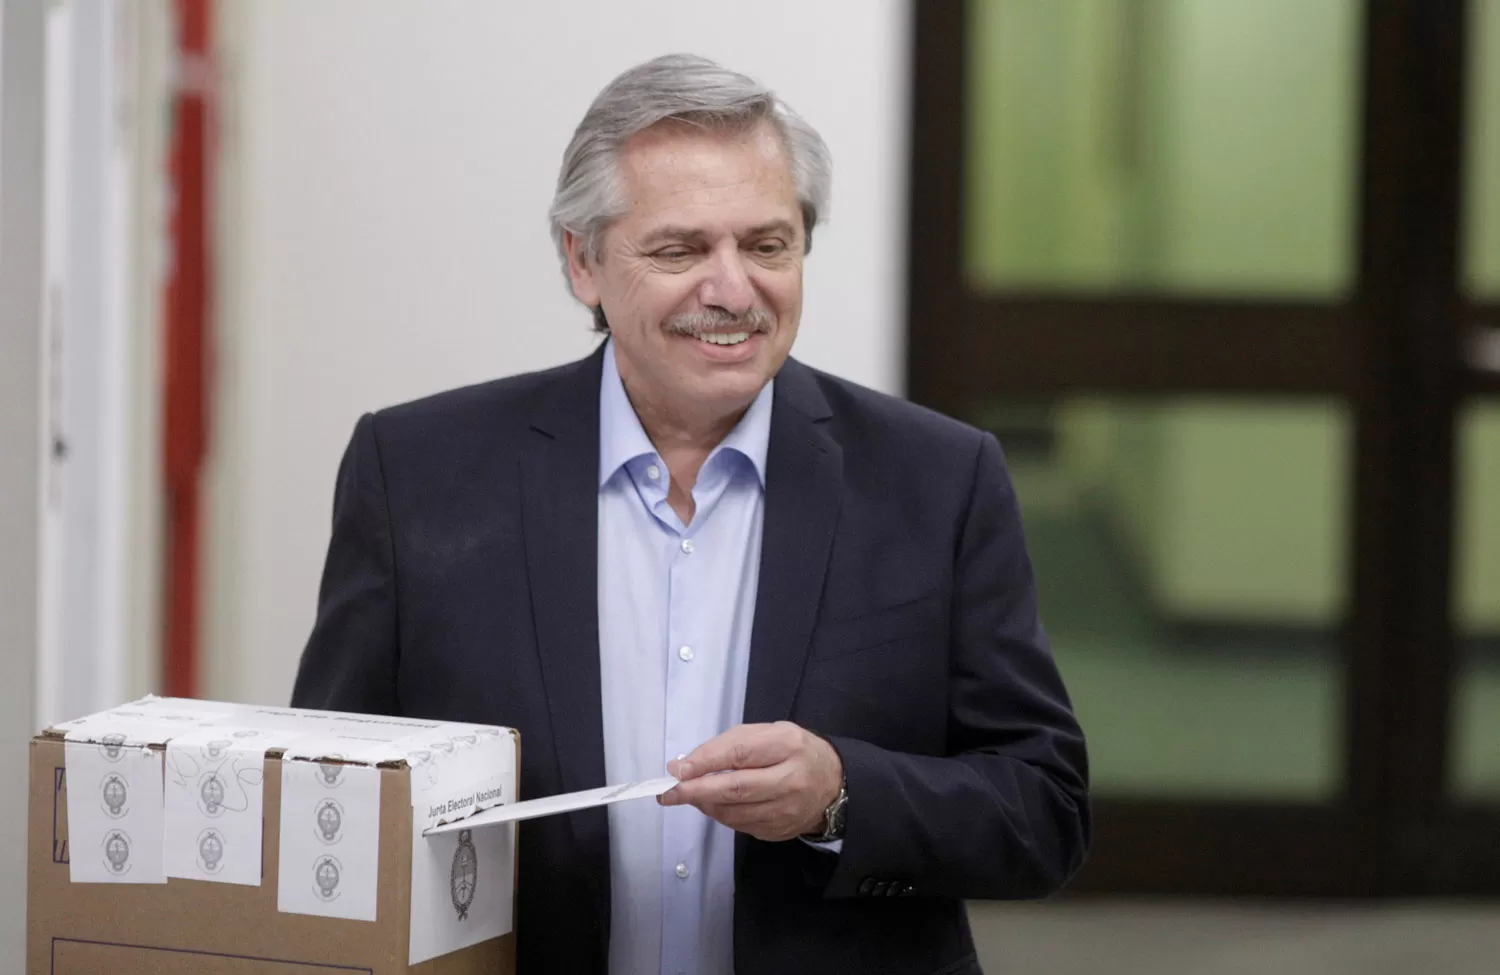 Con pétalos de rosa, recibieron a Alberto Fernández en donde votó